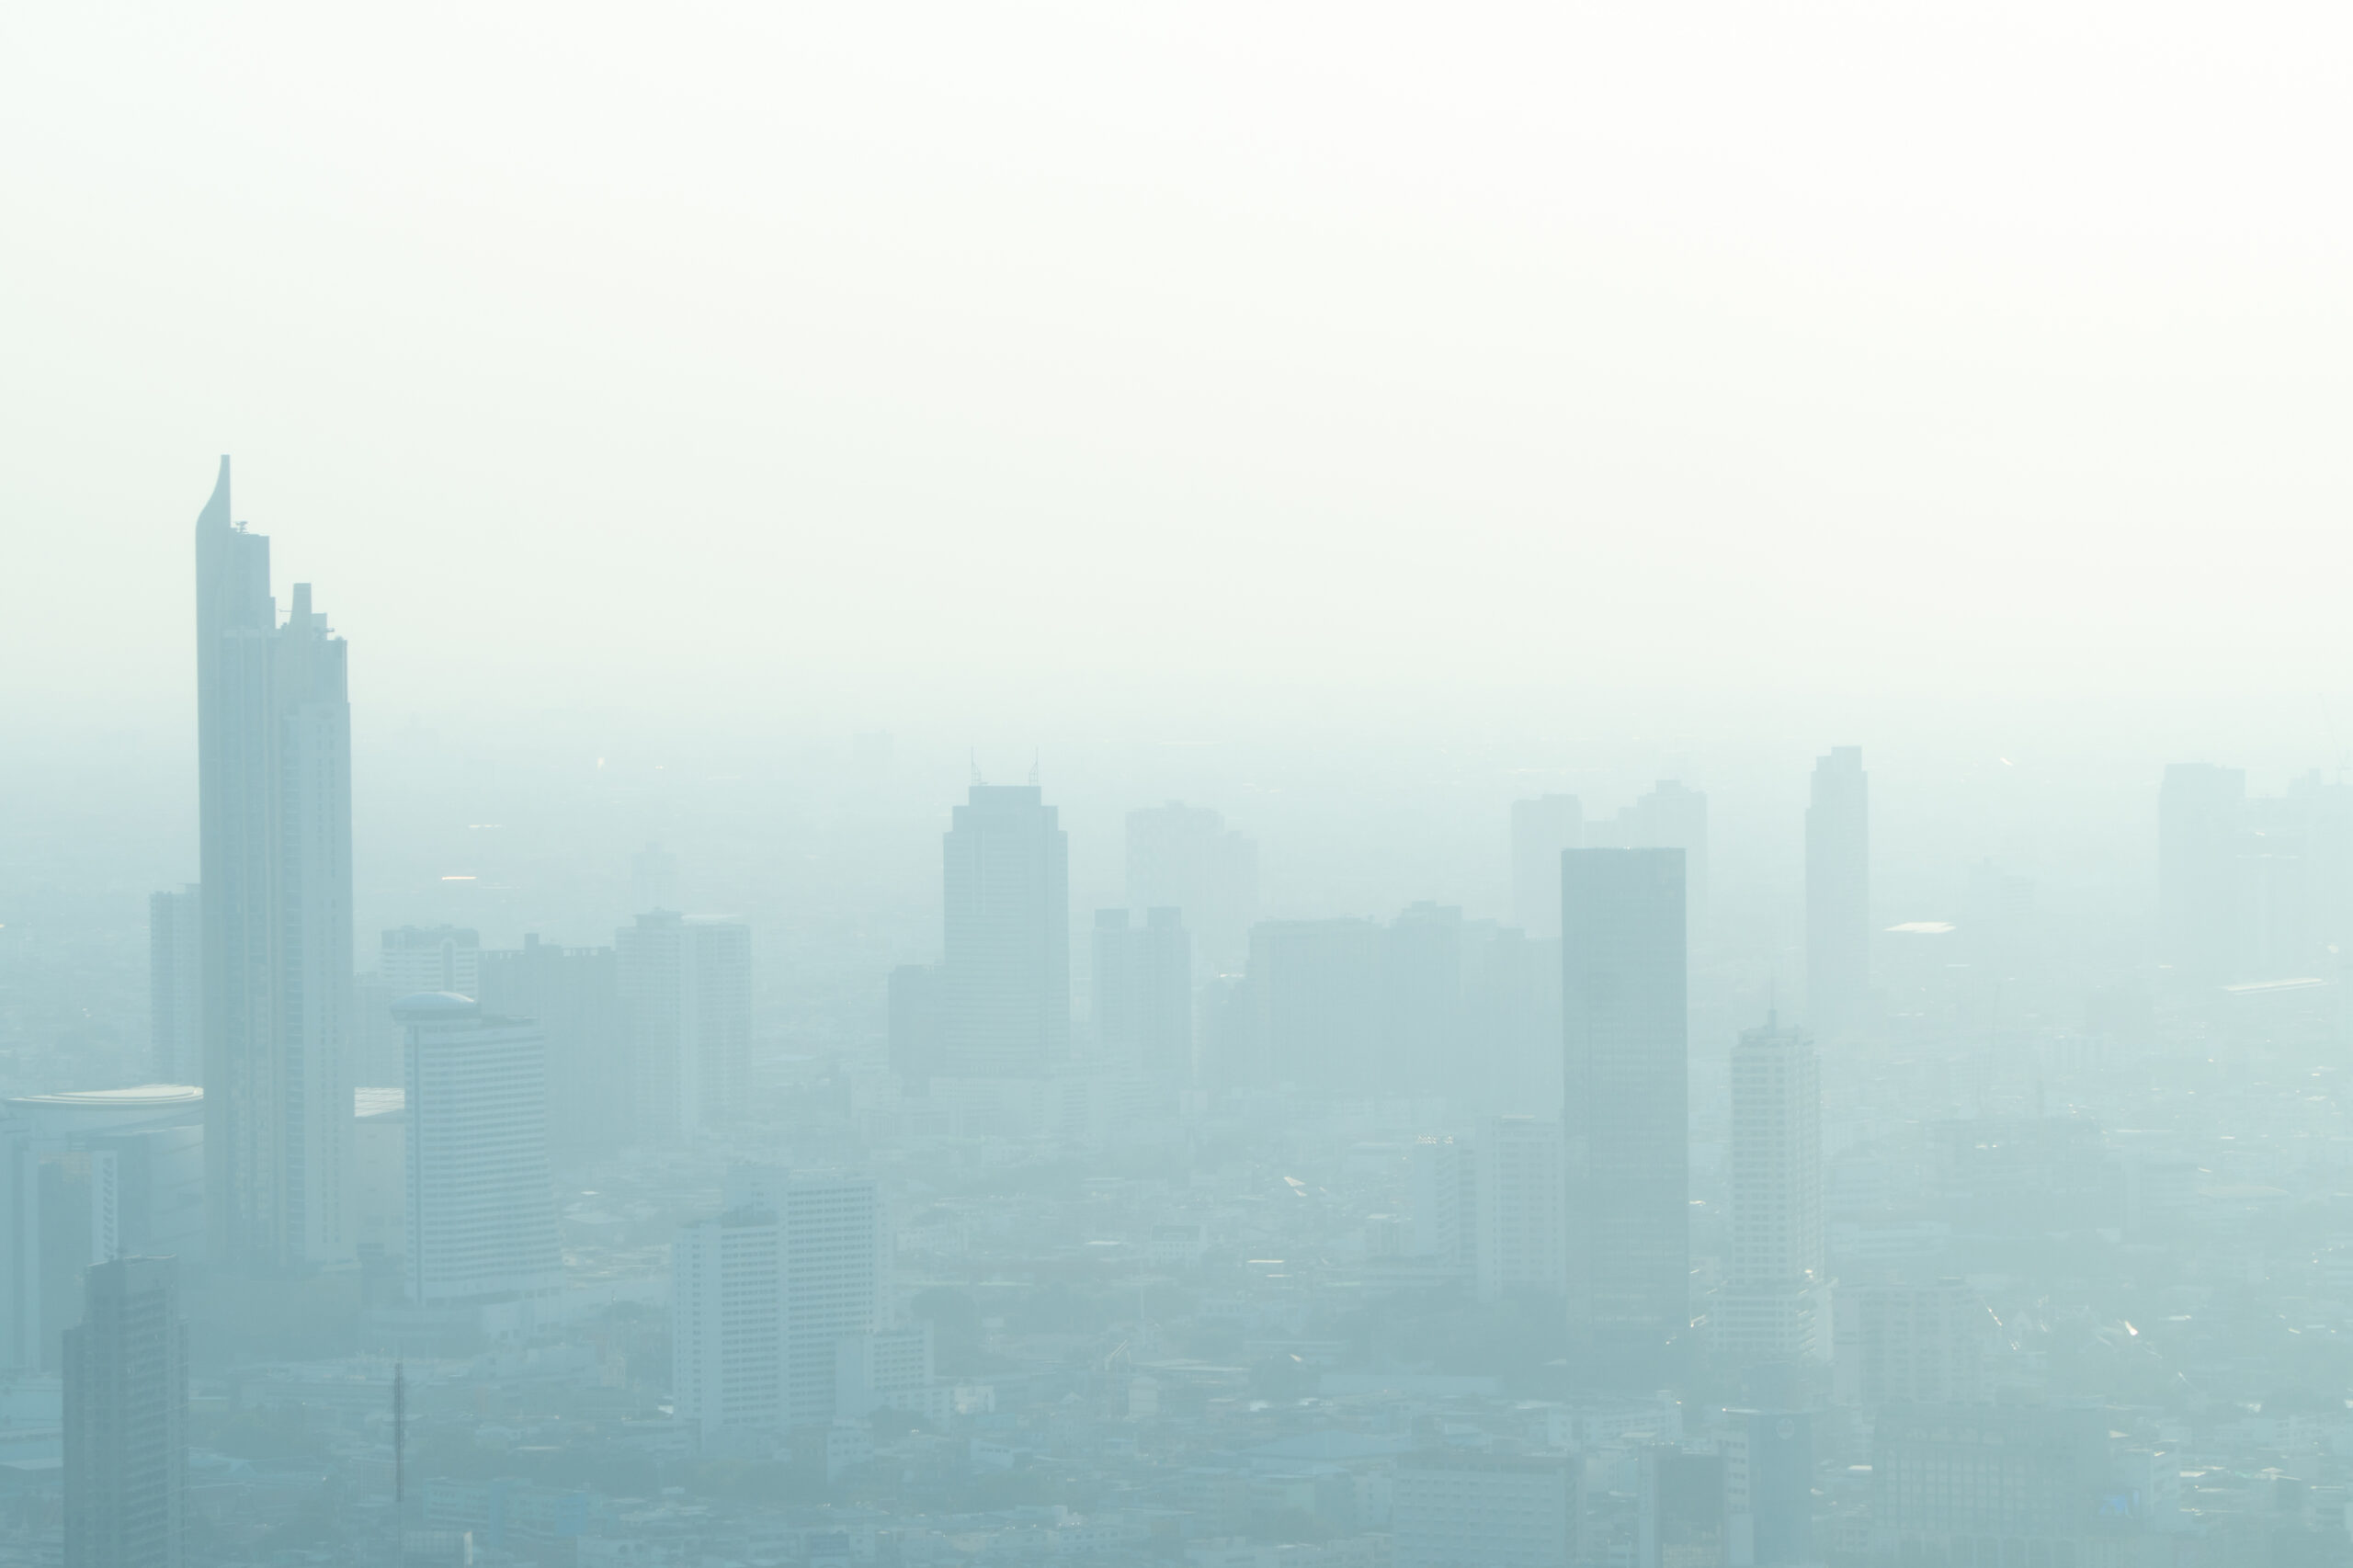 Na zdjęciu widać miasto, które jest zahamowane przez gęsty smog i mgłę, co jest wynikiem zanieczyszczenia powietrza. Widać zatłoczone ulice i budynki, z których widać jedynie ich zarys. Zdjęcie to doskonale ilustruje, jak negatywny wpływ ma zanieczyszczenie powietrza na jakość życia mieszkańców miast oraz jak ważne jest podejmowanie działań mających na celu poprawę jakości powietrza.